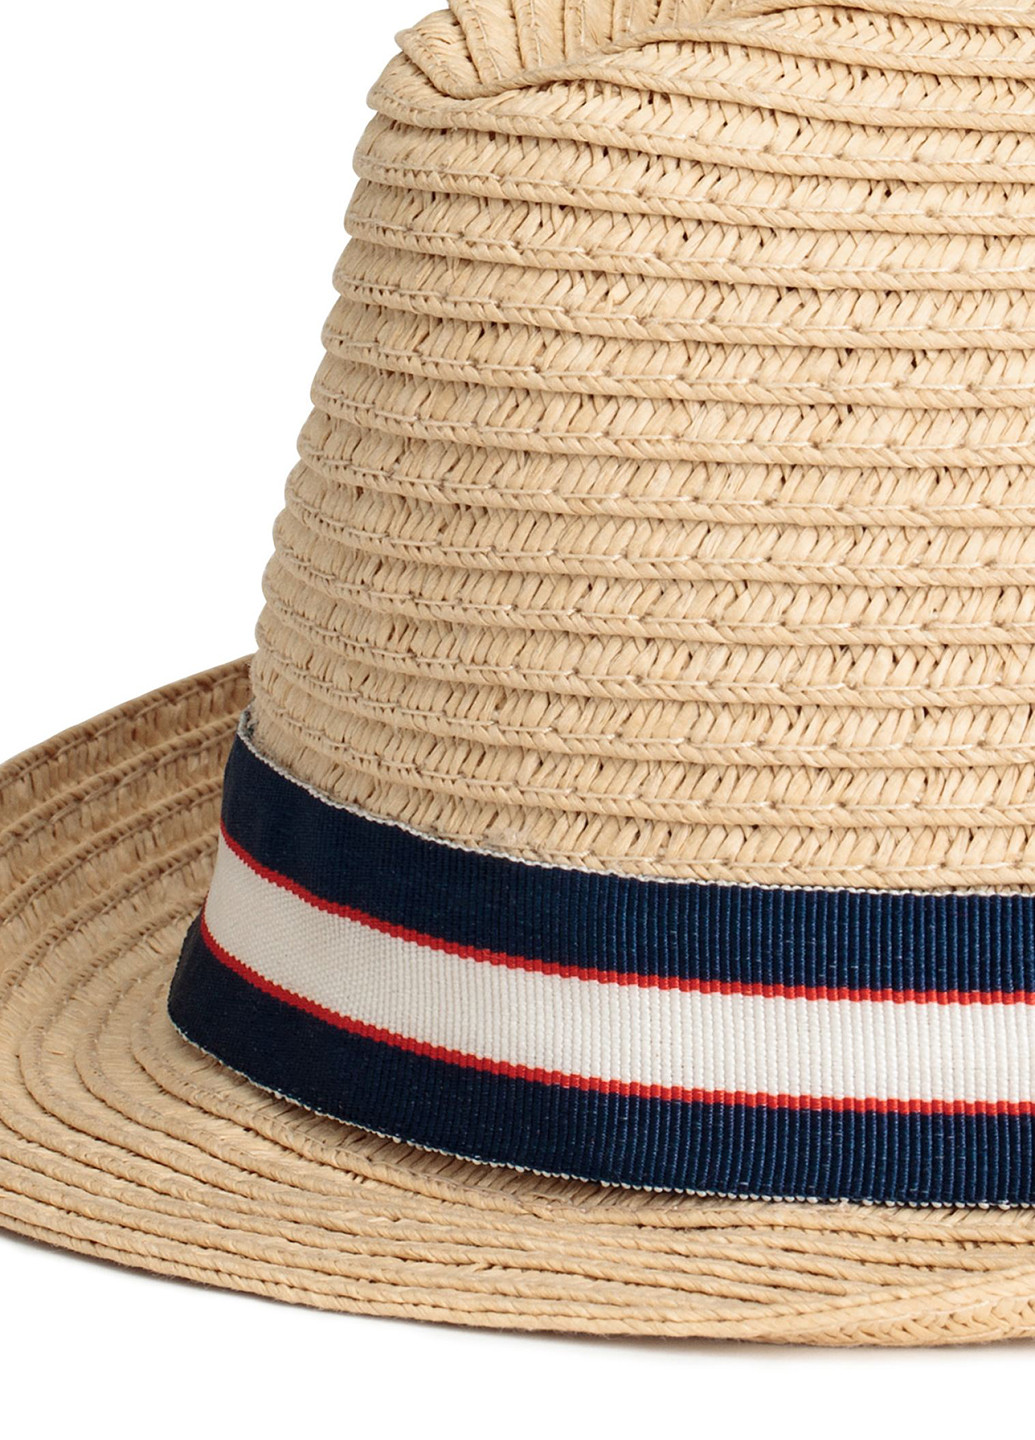 Шляпа H&M федора однотонная бежевая кэжуал искусственная солома